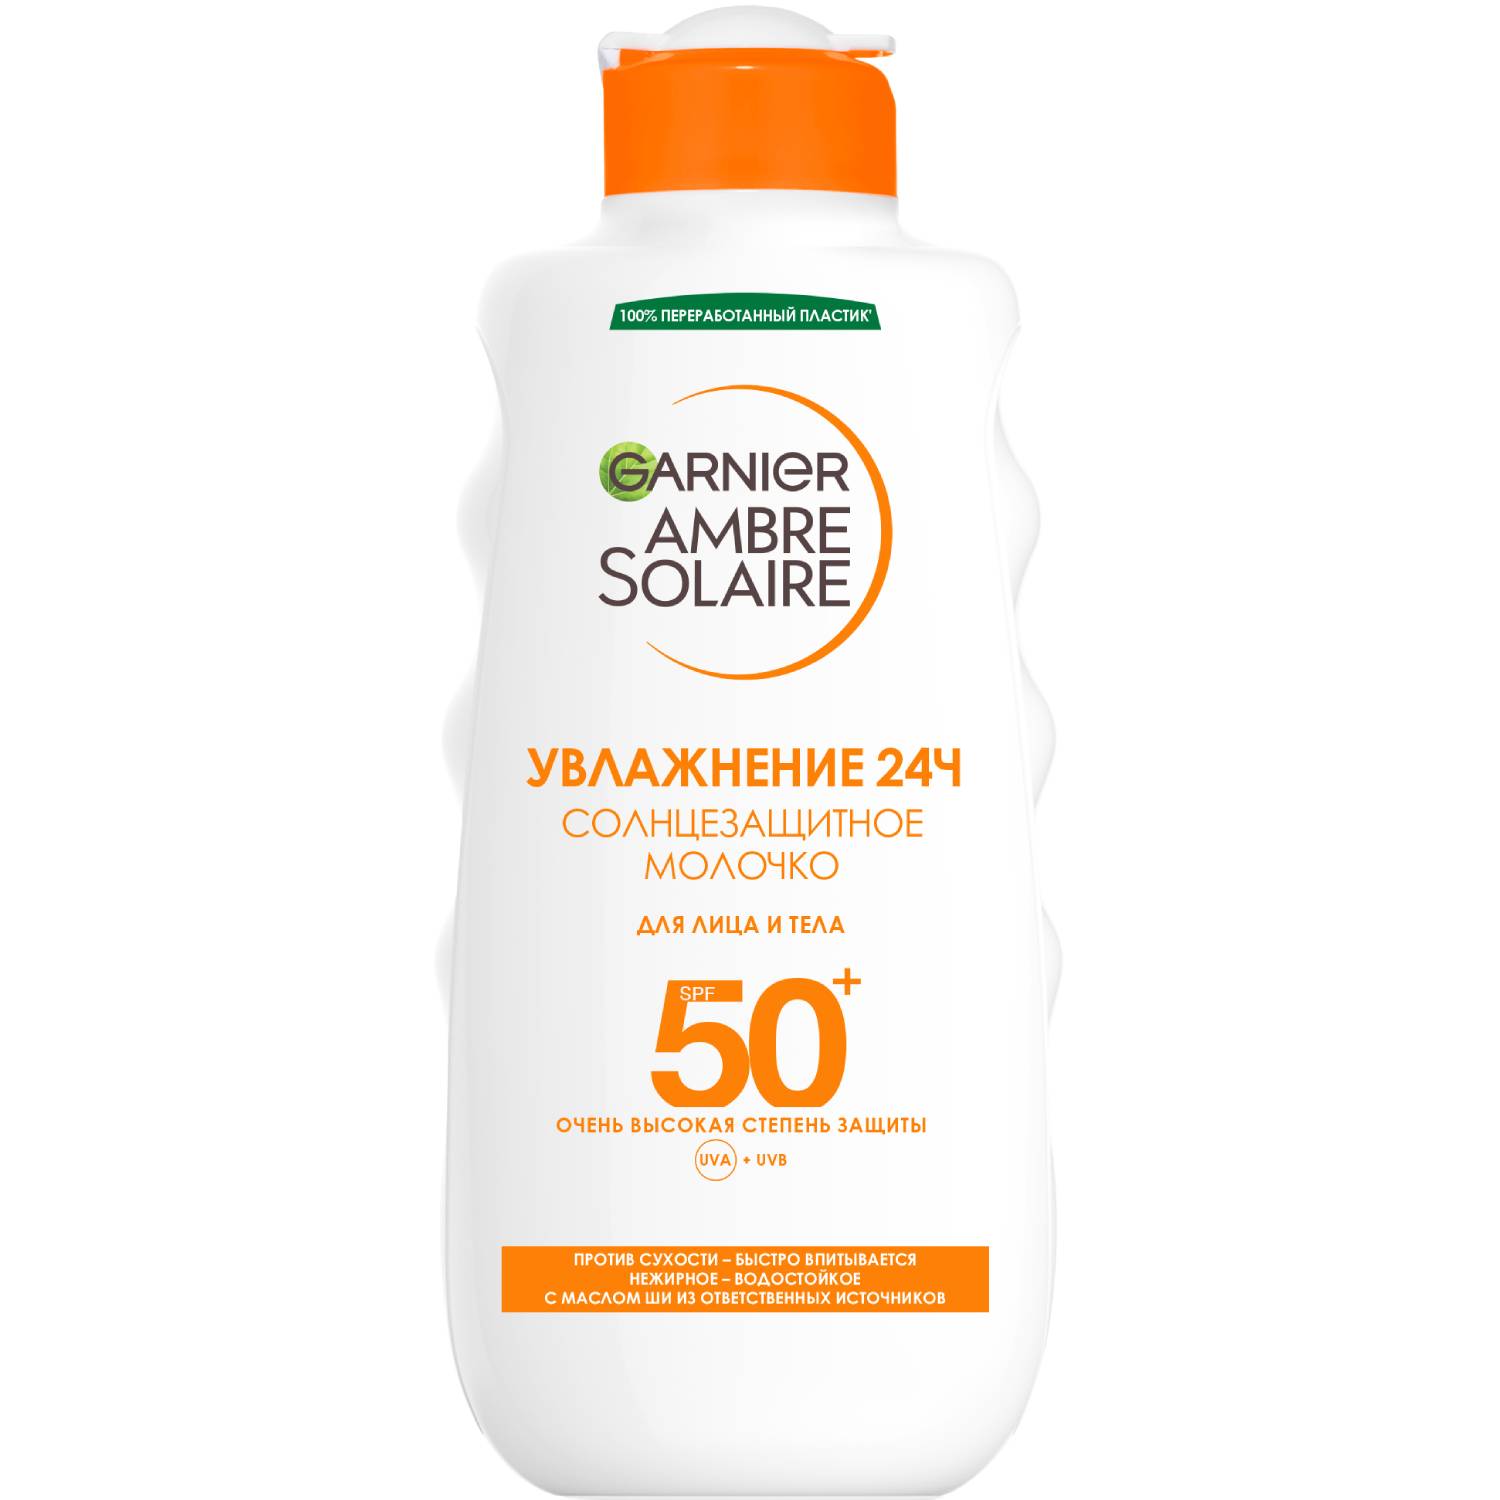 Garnier Солнцезащитное водостойкое молочко для лица и тела SPF50+, 200 мл (Garnier, Amber solaire)